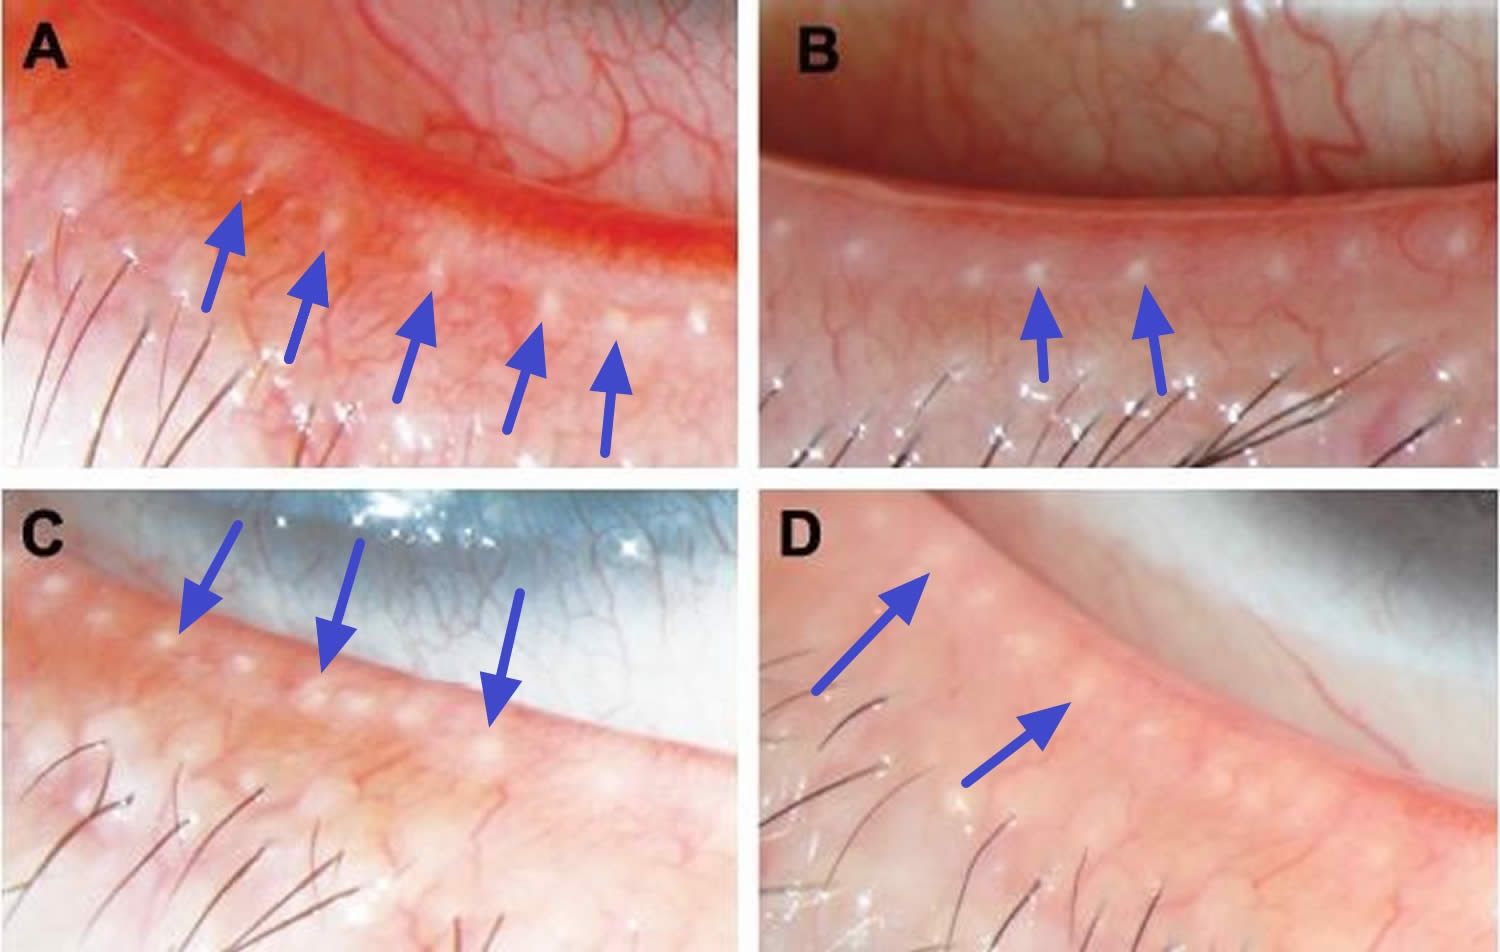 Meibomian gland openings on eyelids